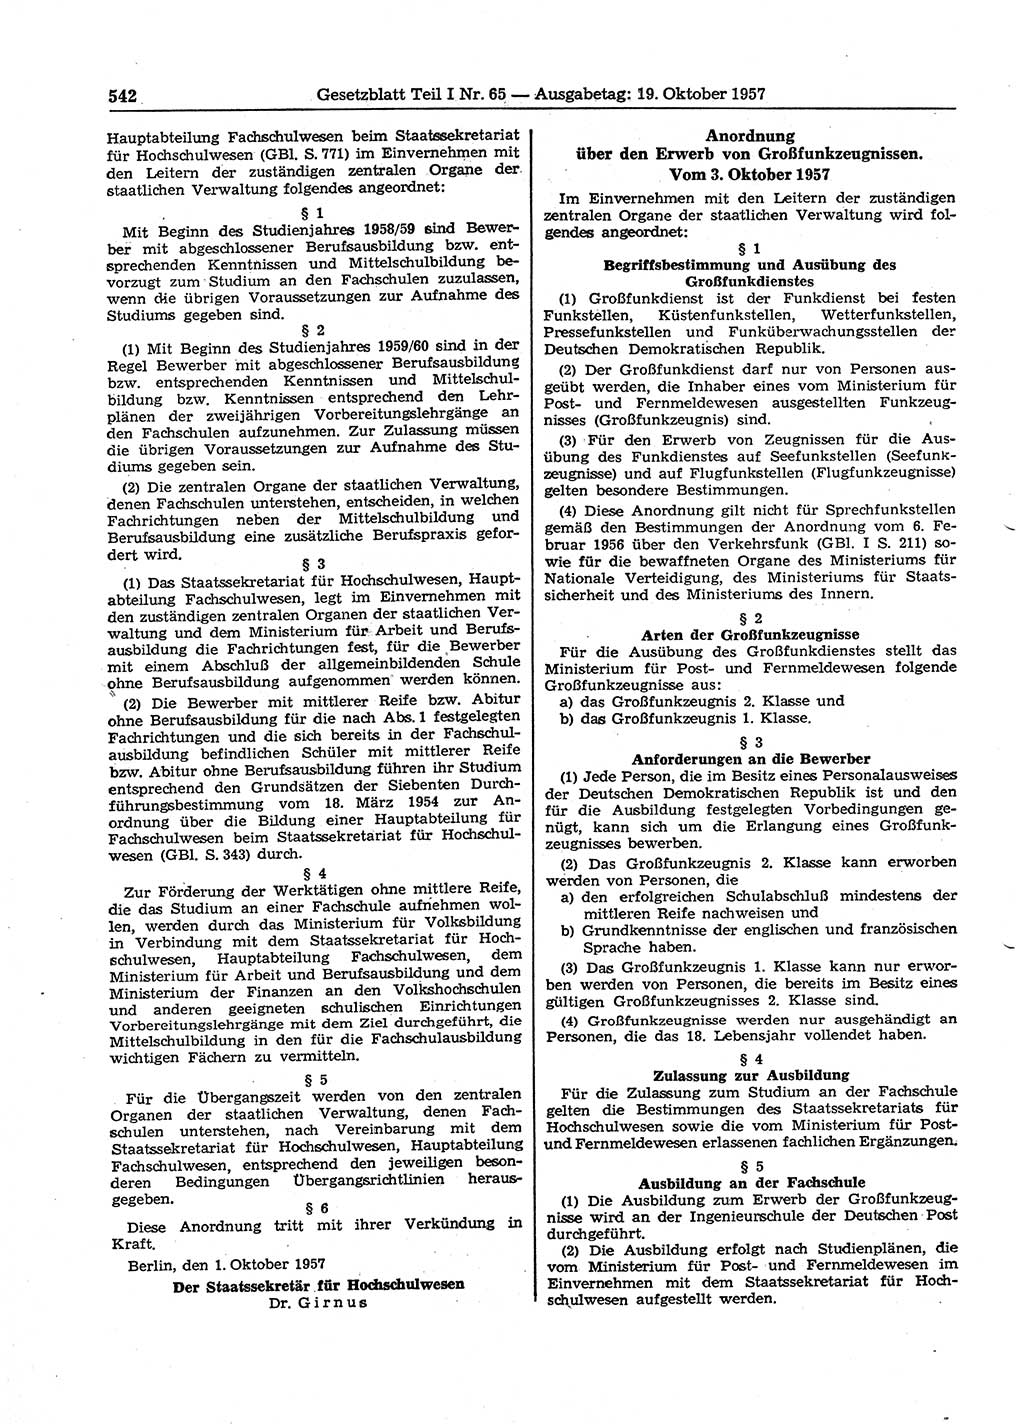 Gesetzblatt (GBl.) der Deutschen Demokratischen Republik (DDR) Teil Ⅰ 1957, Seite 542 (GBl. DDR Ⅰ 1957, S. 542)